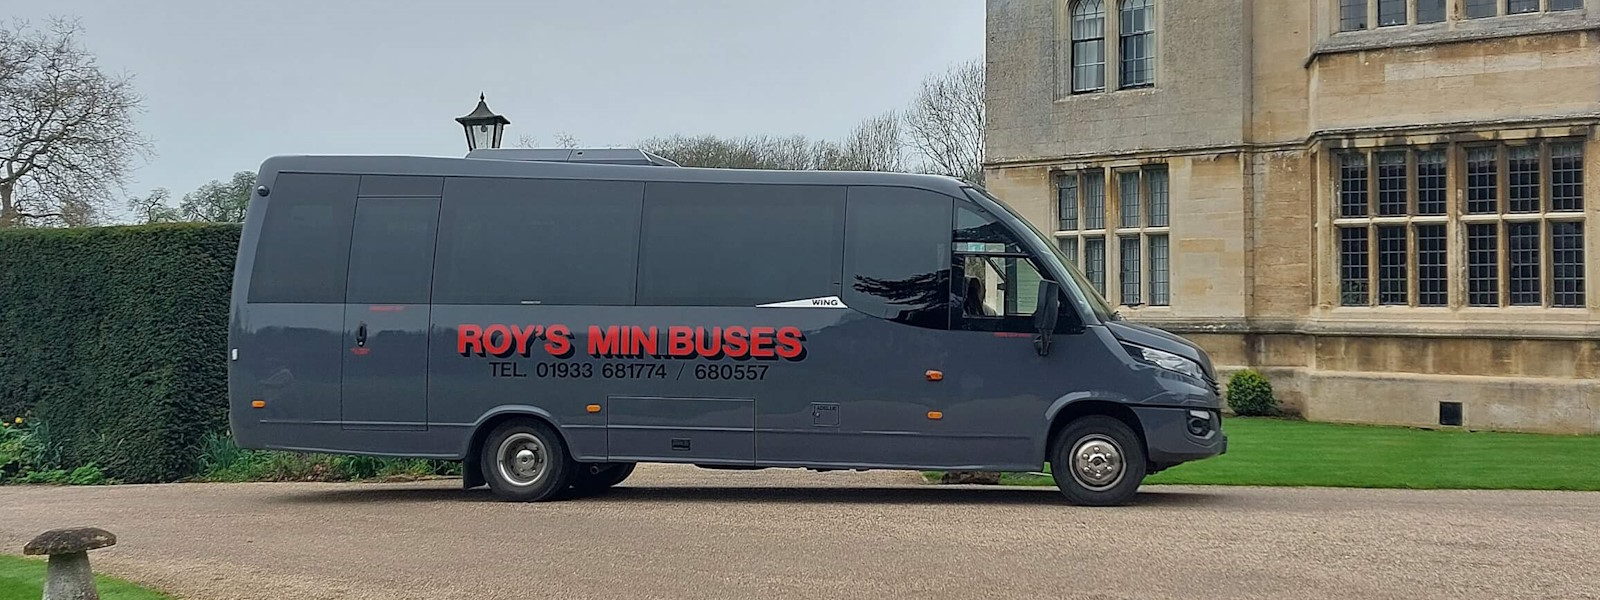 Roy's Minibuses